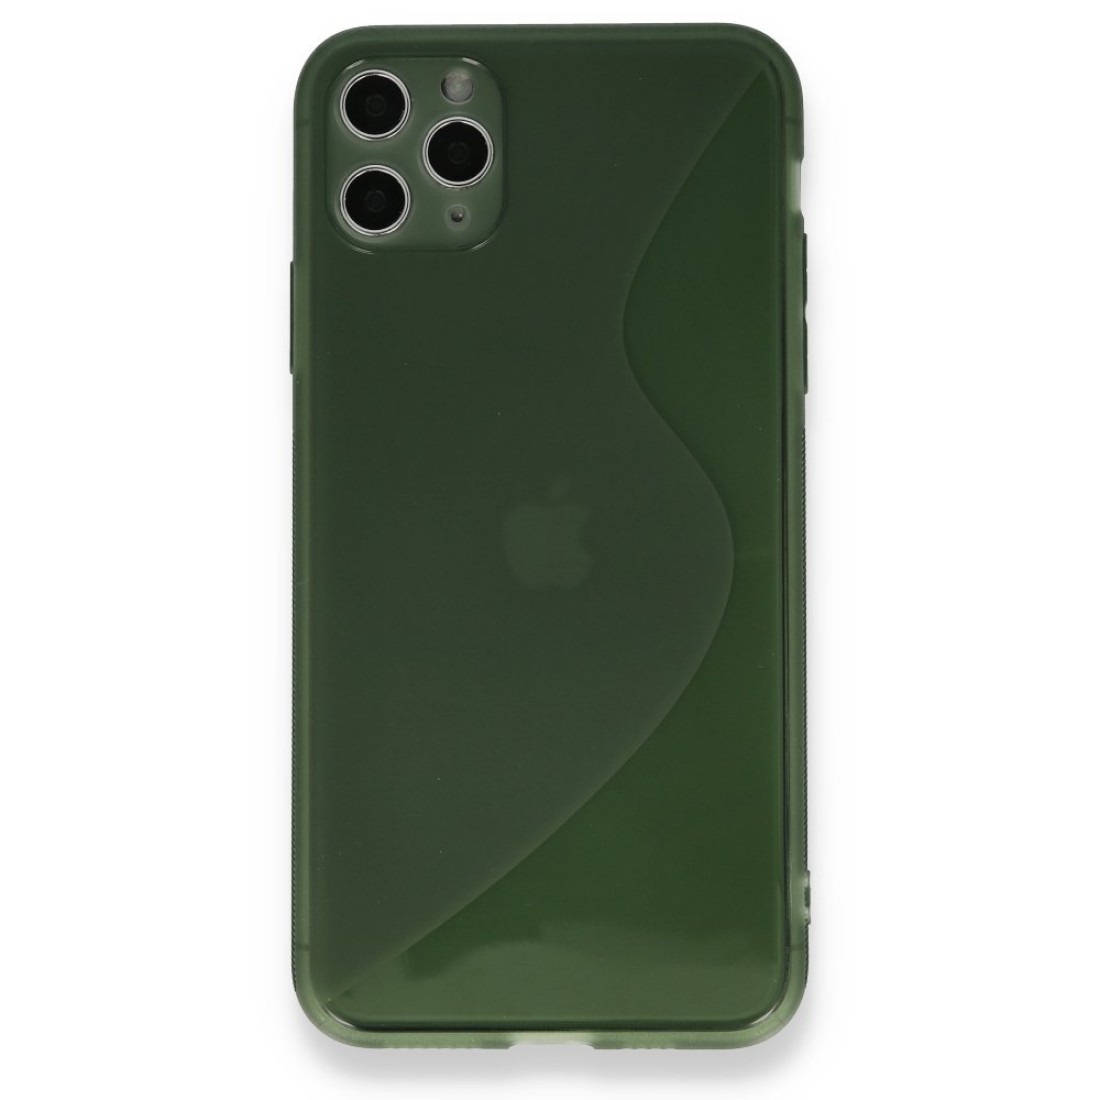 Apple iPhone 11 Pro Kılıf S Silikon - Yeşil